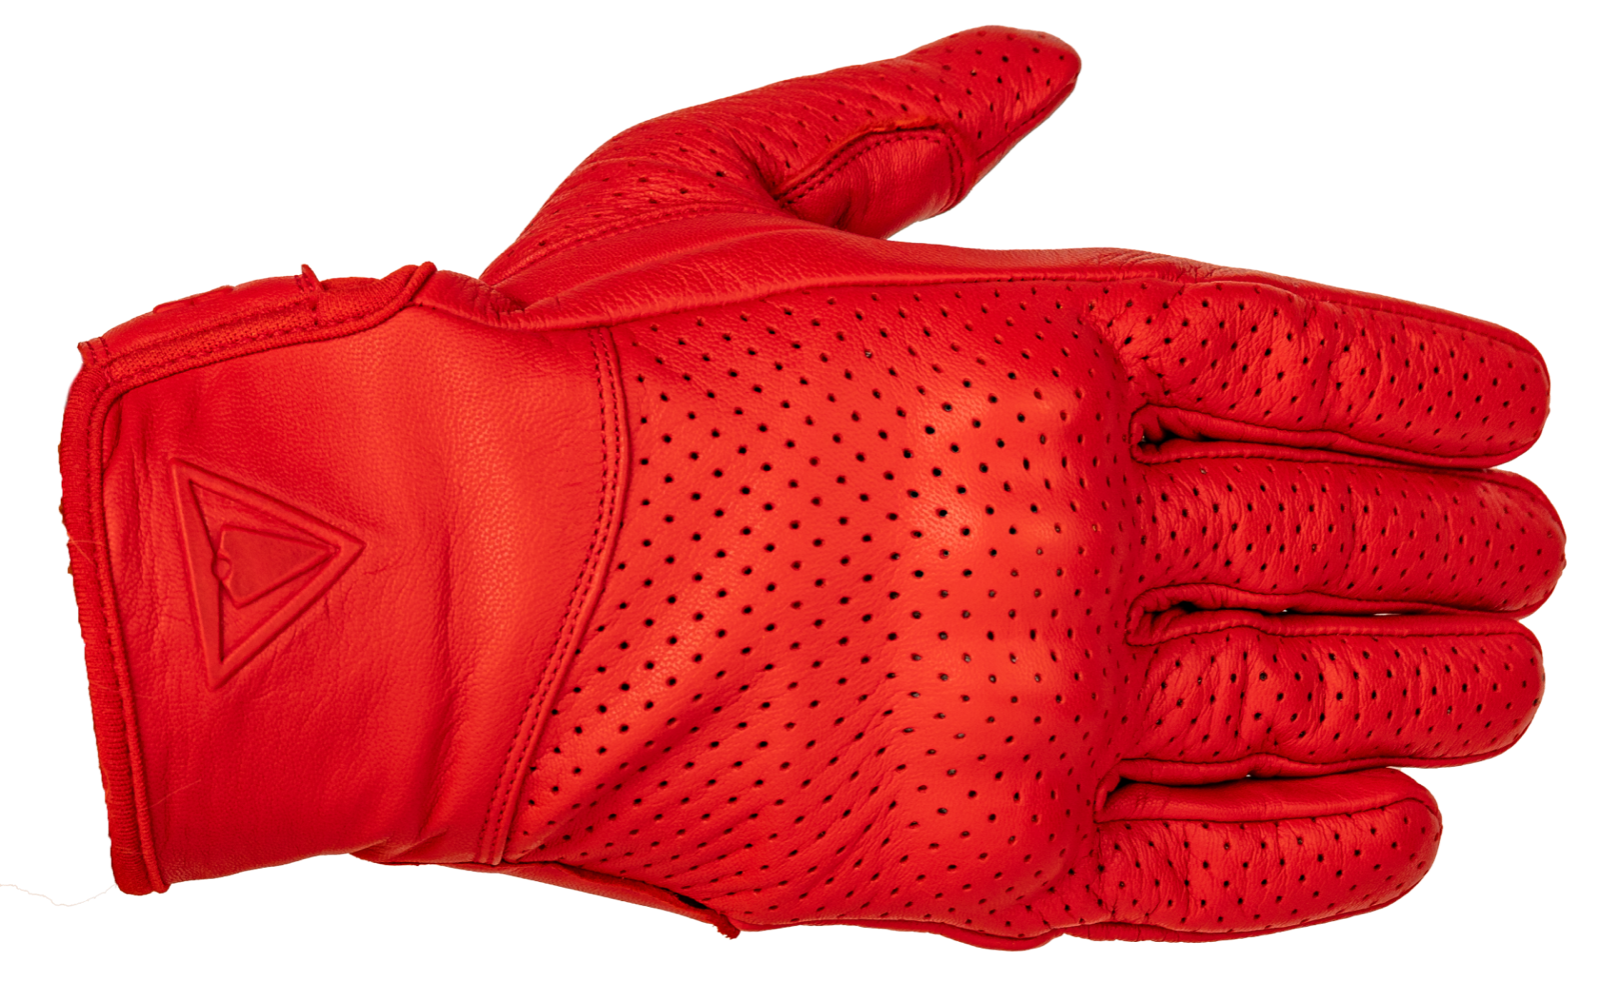 Racer Verano Damen-Handschuh 49,95€